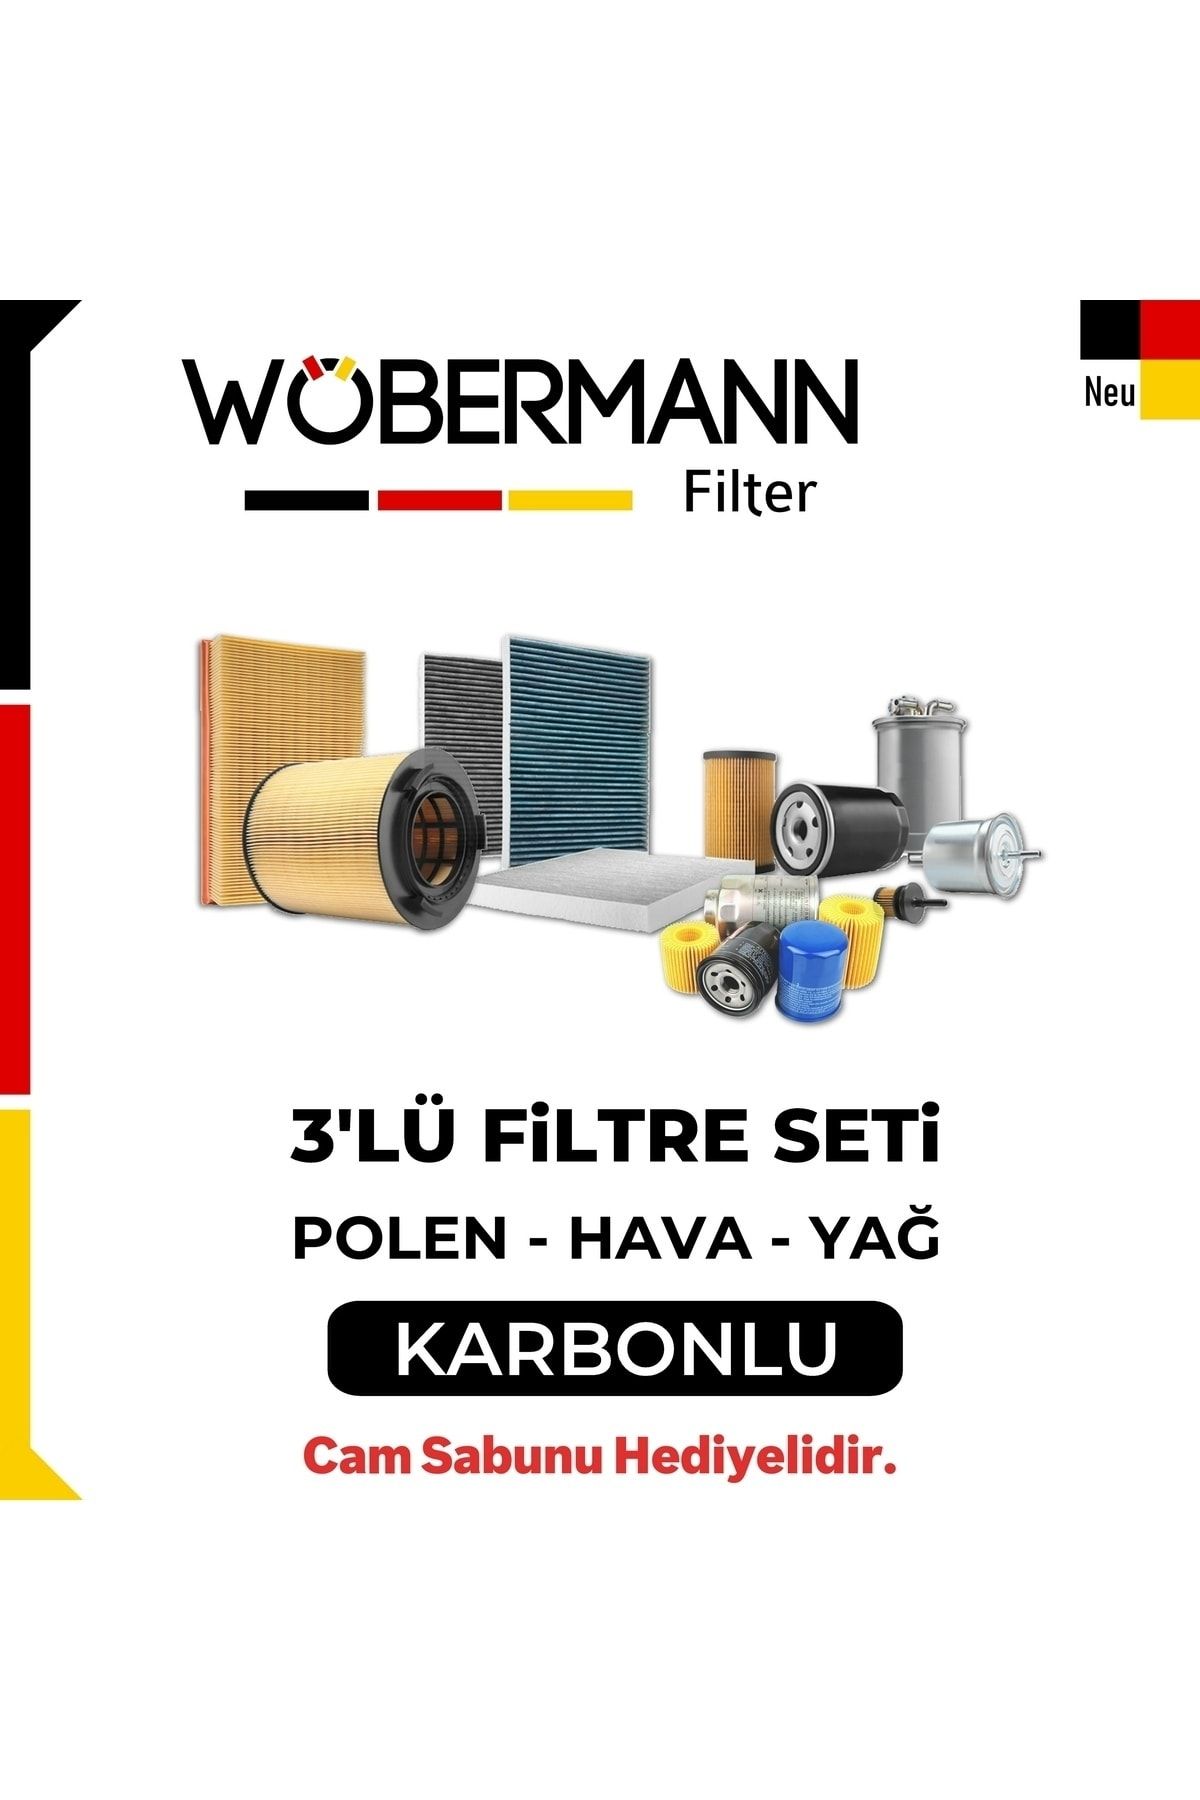 Wöbermann Vw Amarok 2.0 Tdı Filtre Bakım Seti 2011-2019 3lü Karbonlu